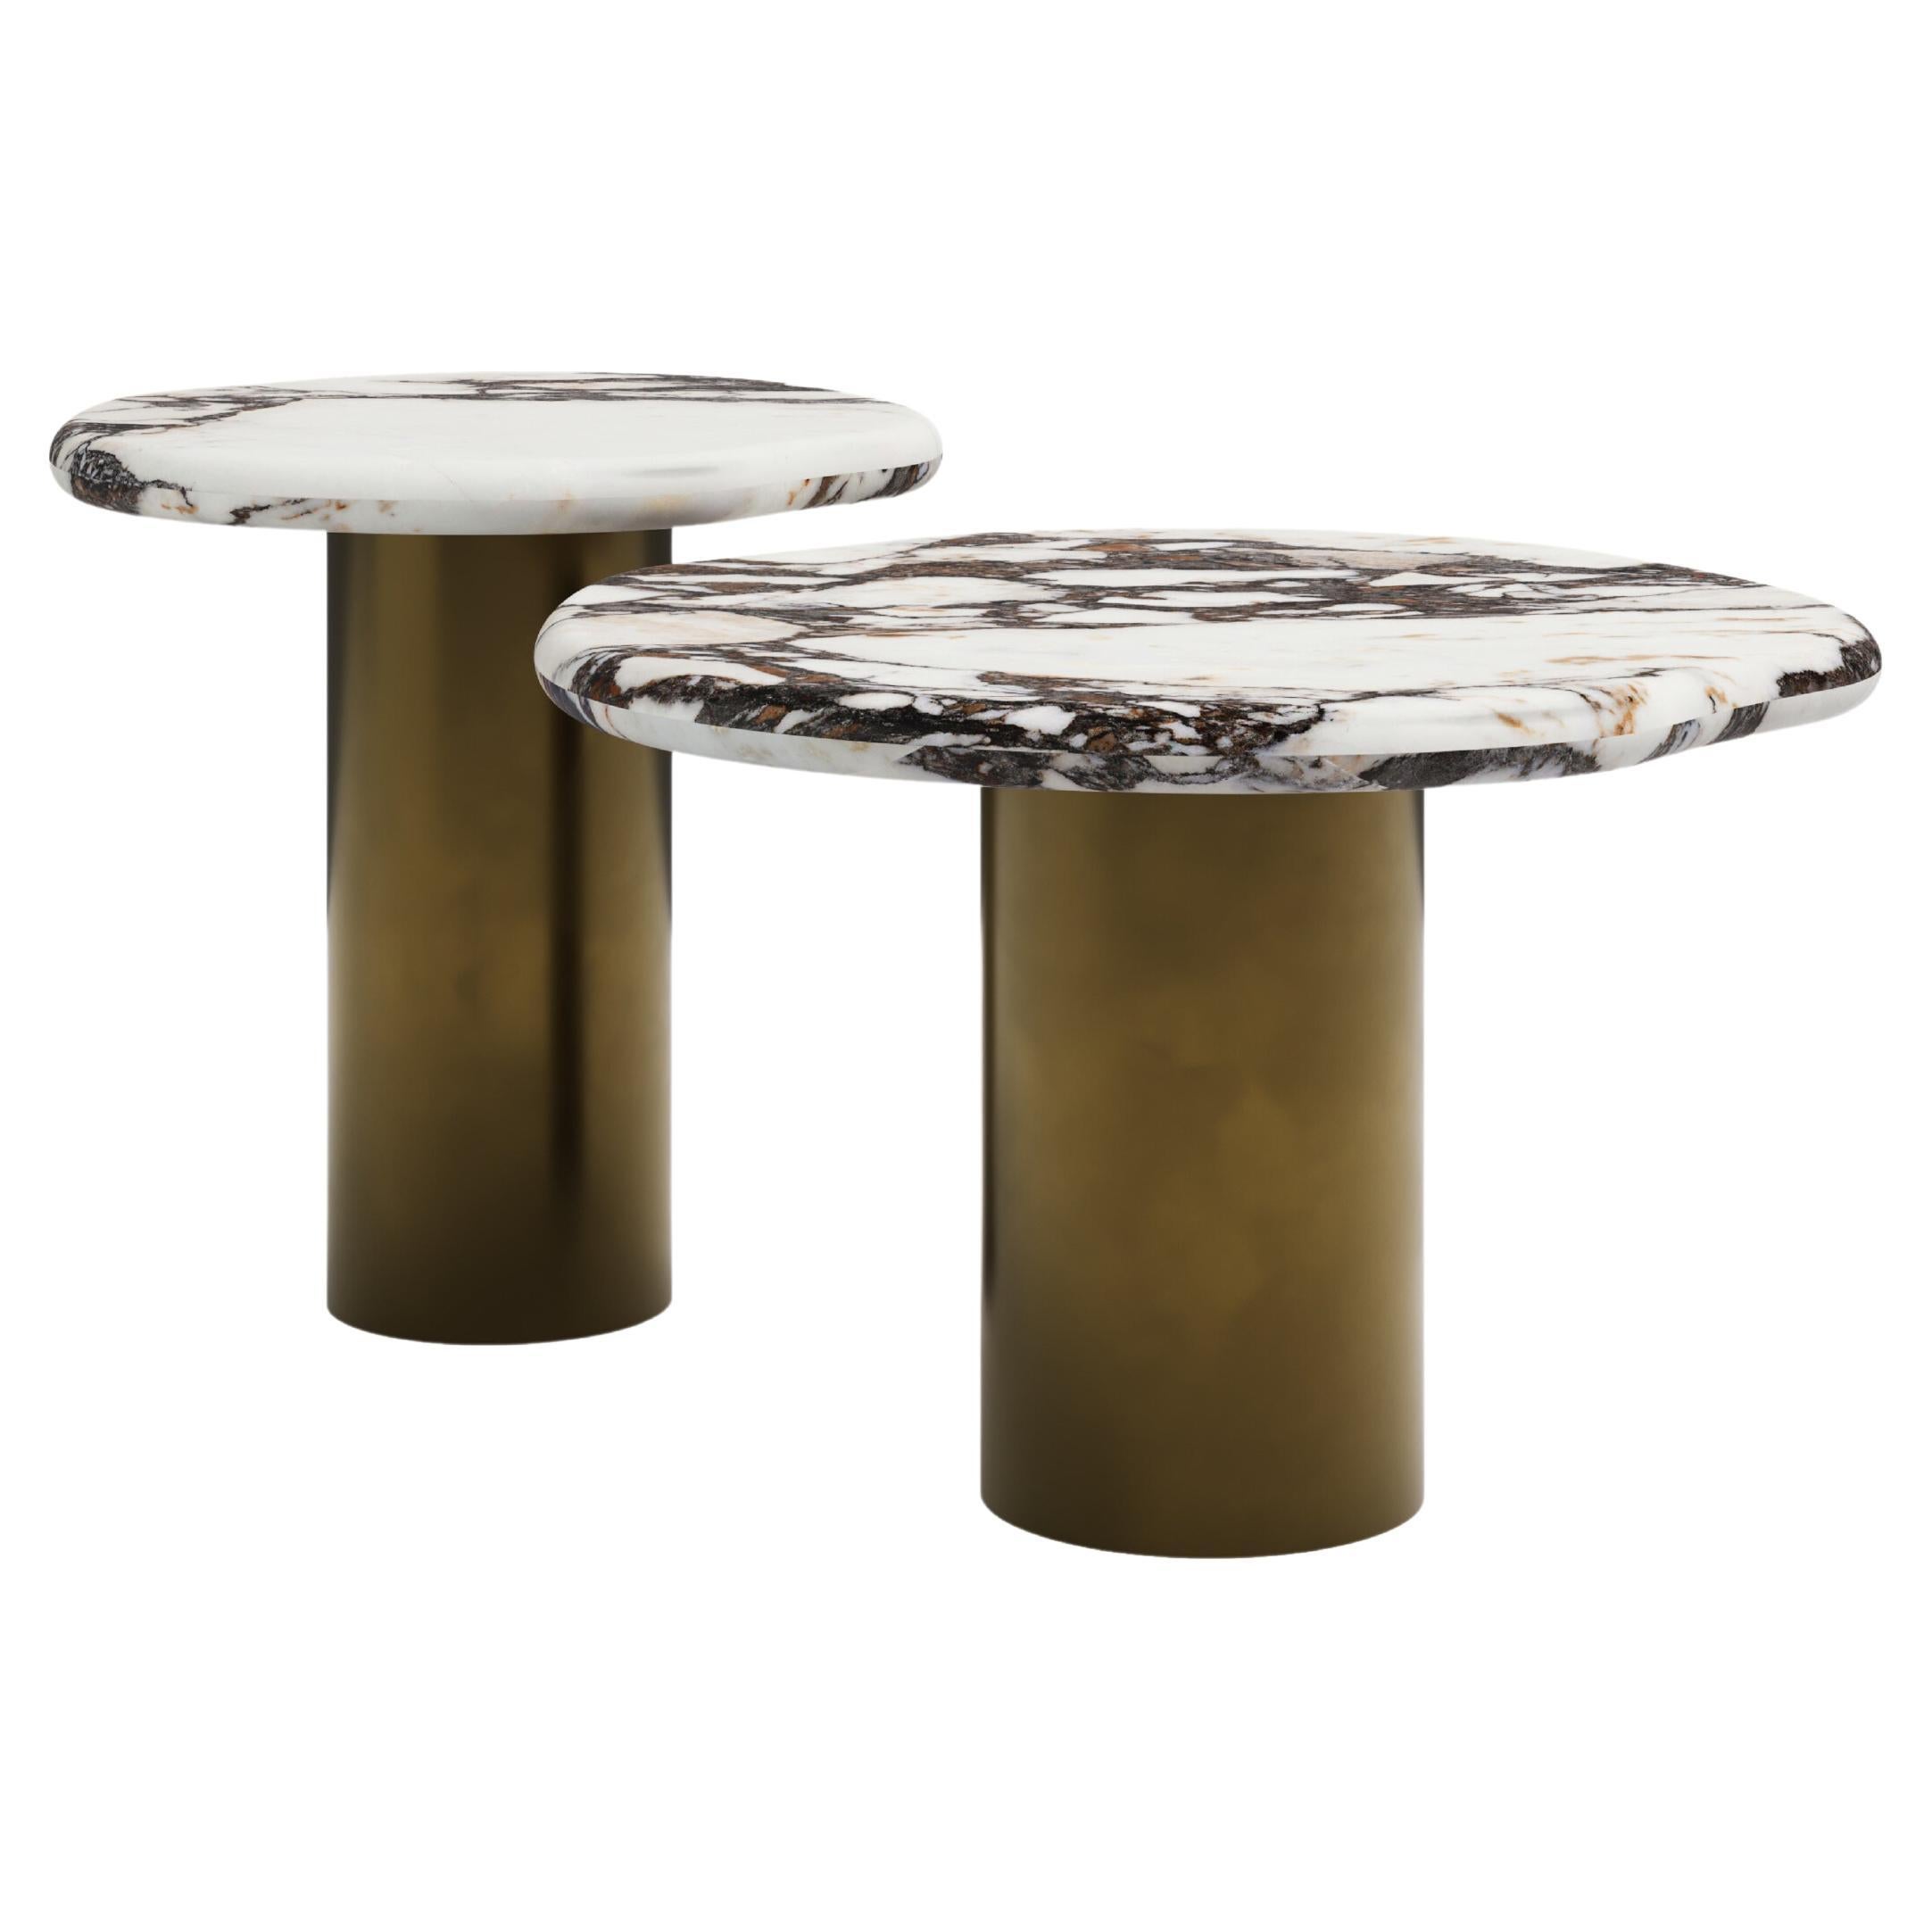 FORM(LA) Lago Round Side Table 24”L x 24”W x 16”H Viola Marble & Antique Bronze